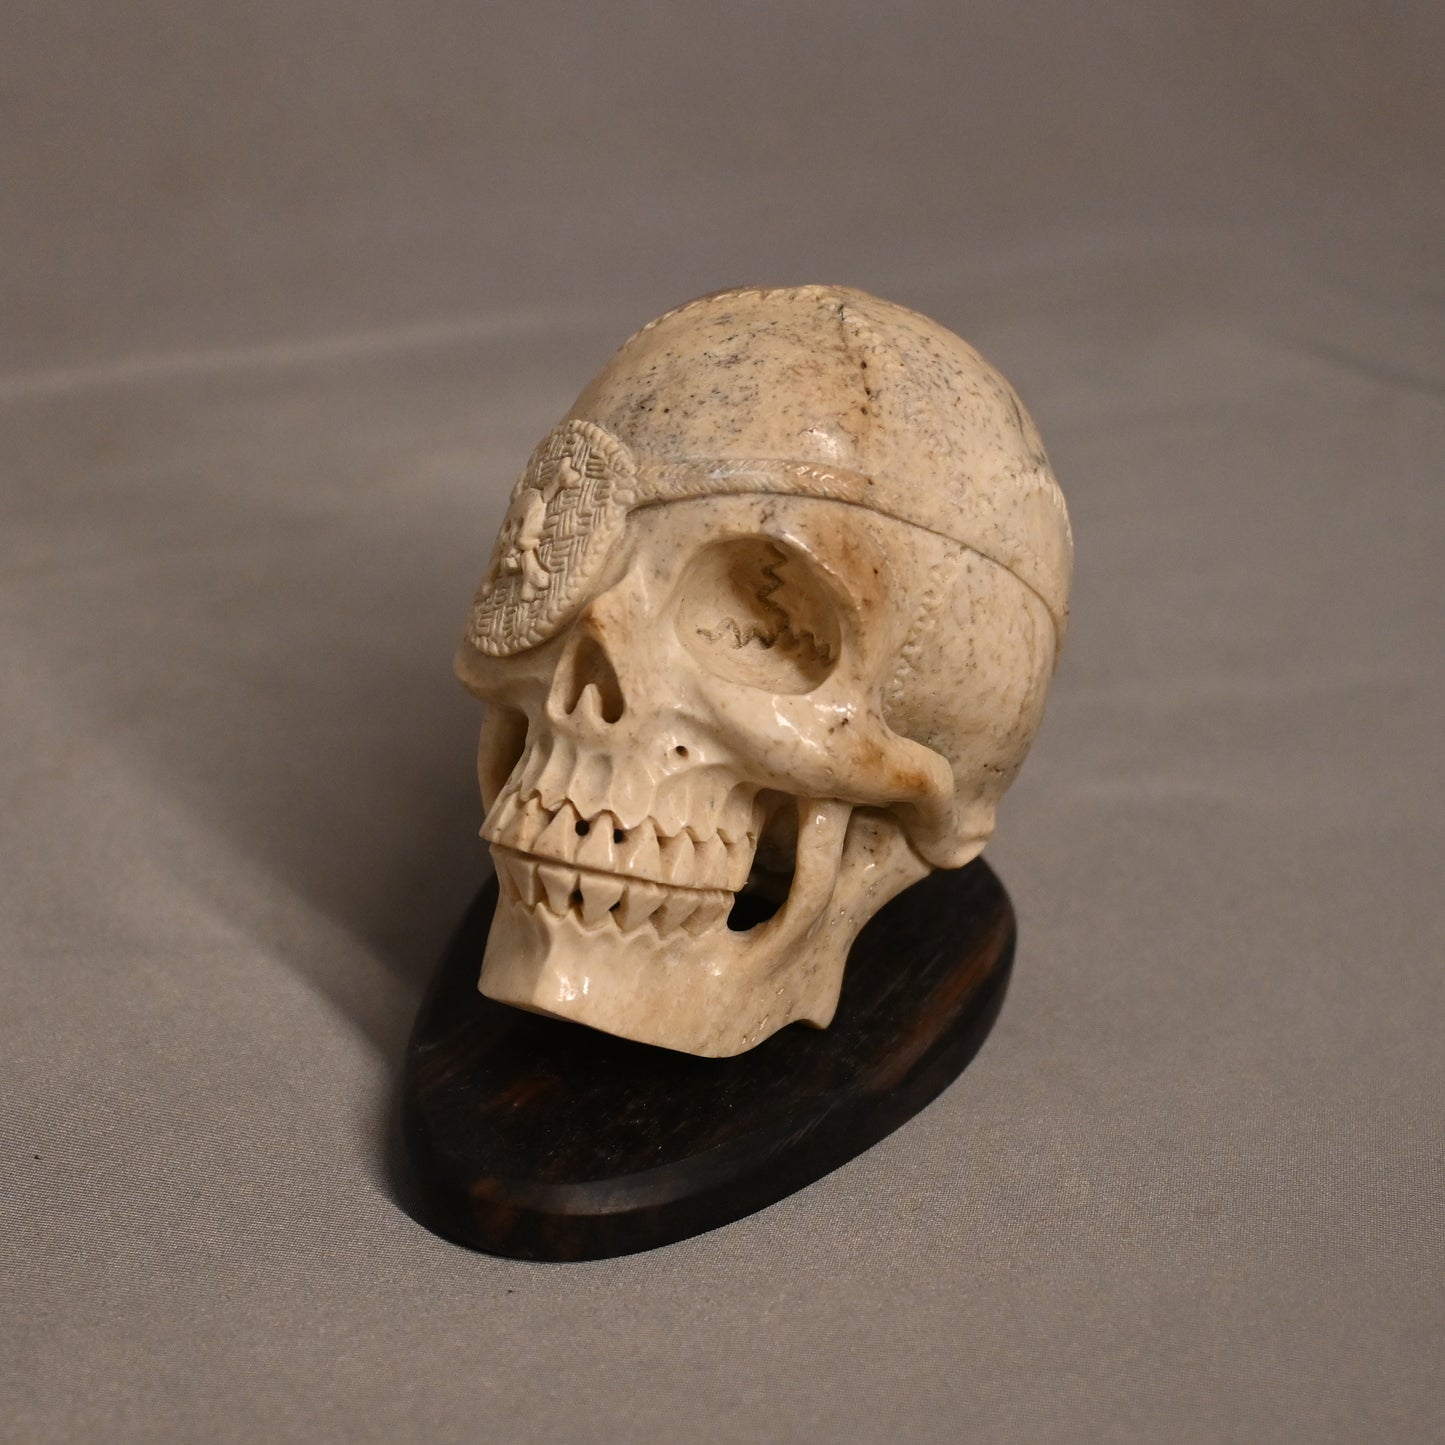 Stone Pirate Skull